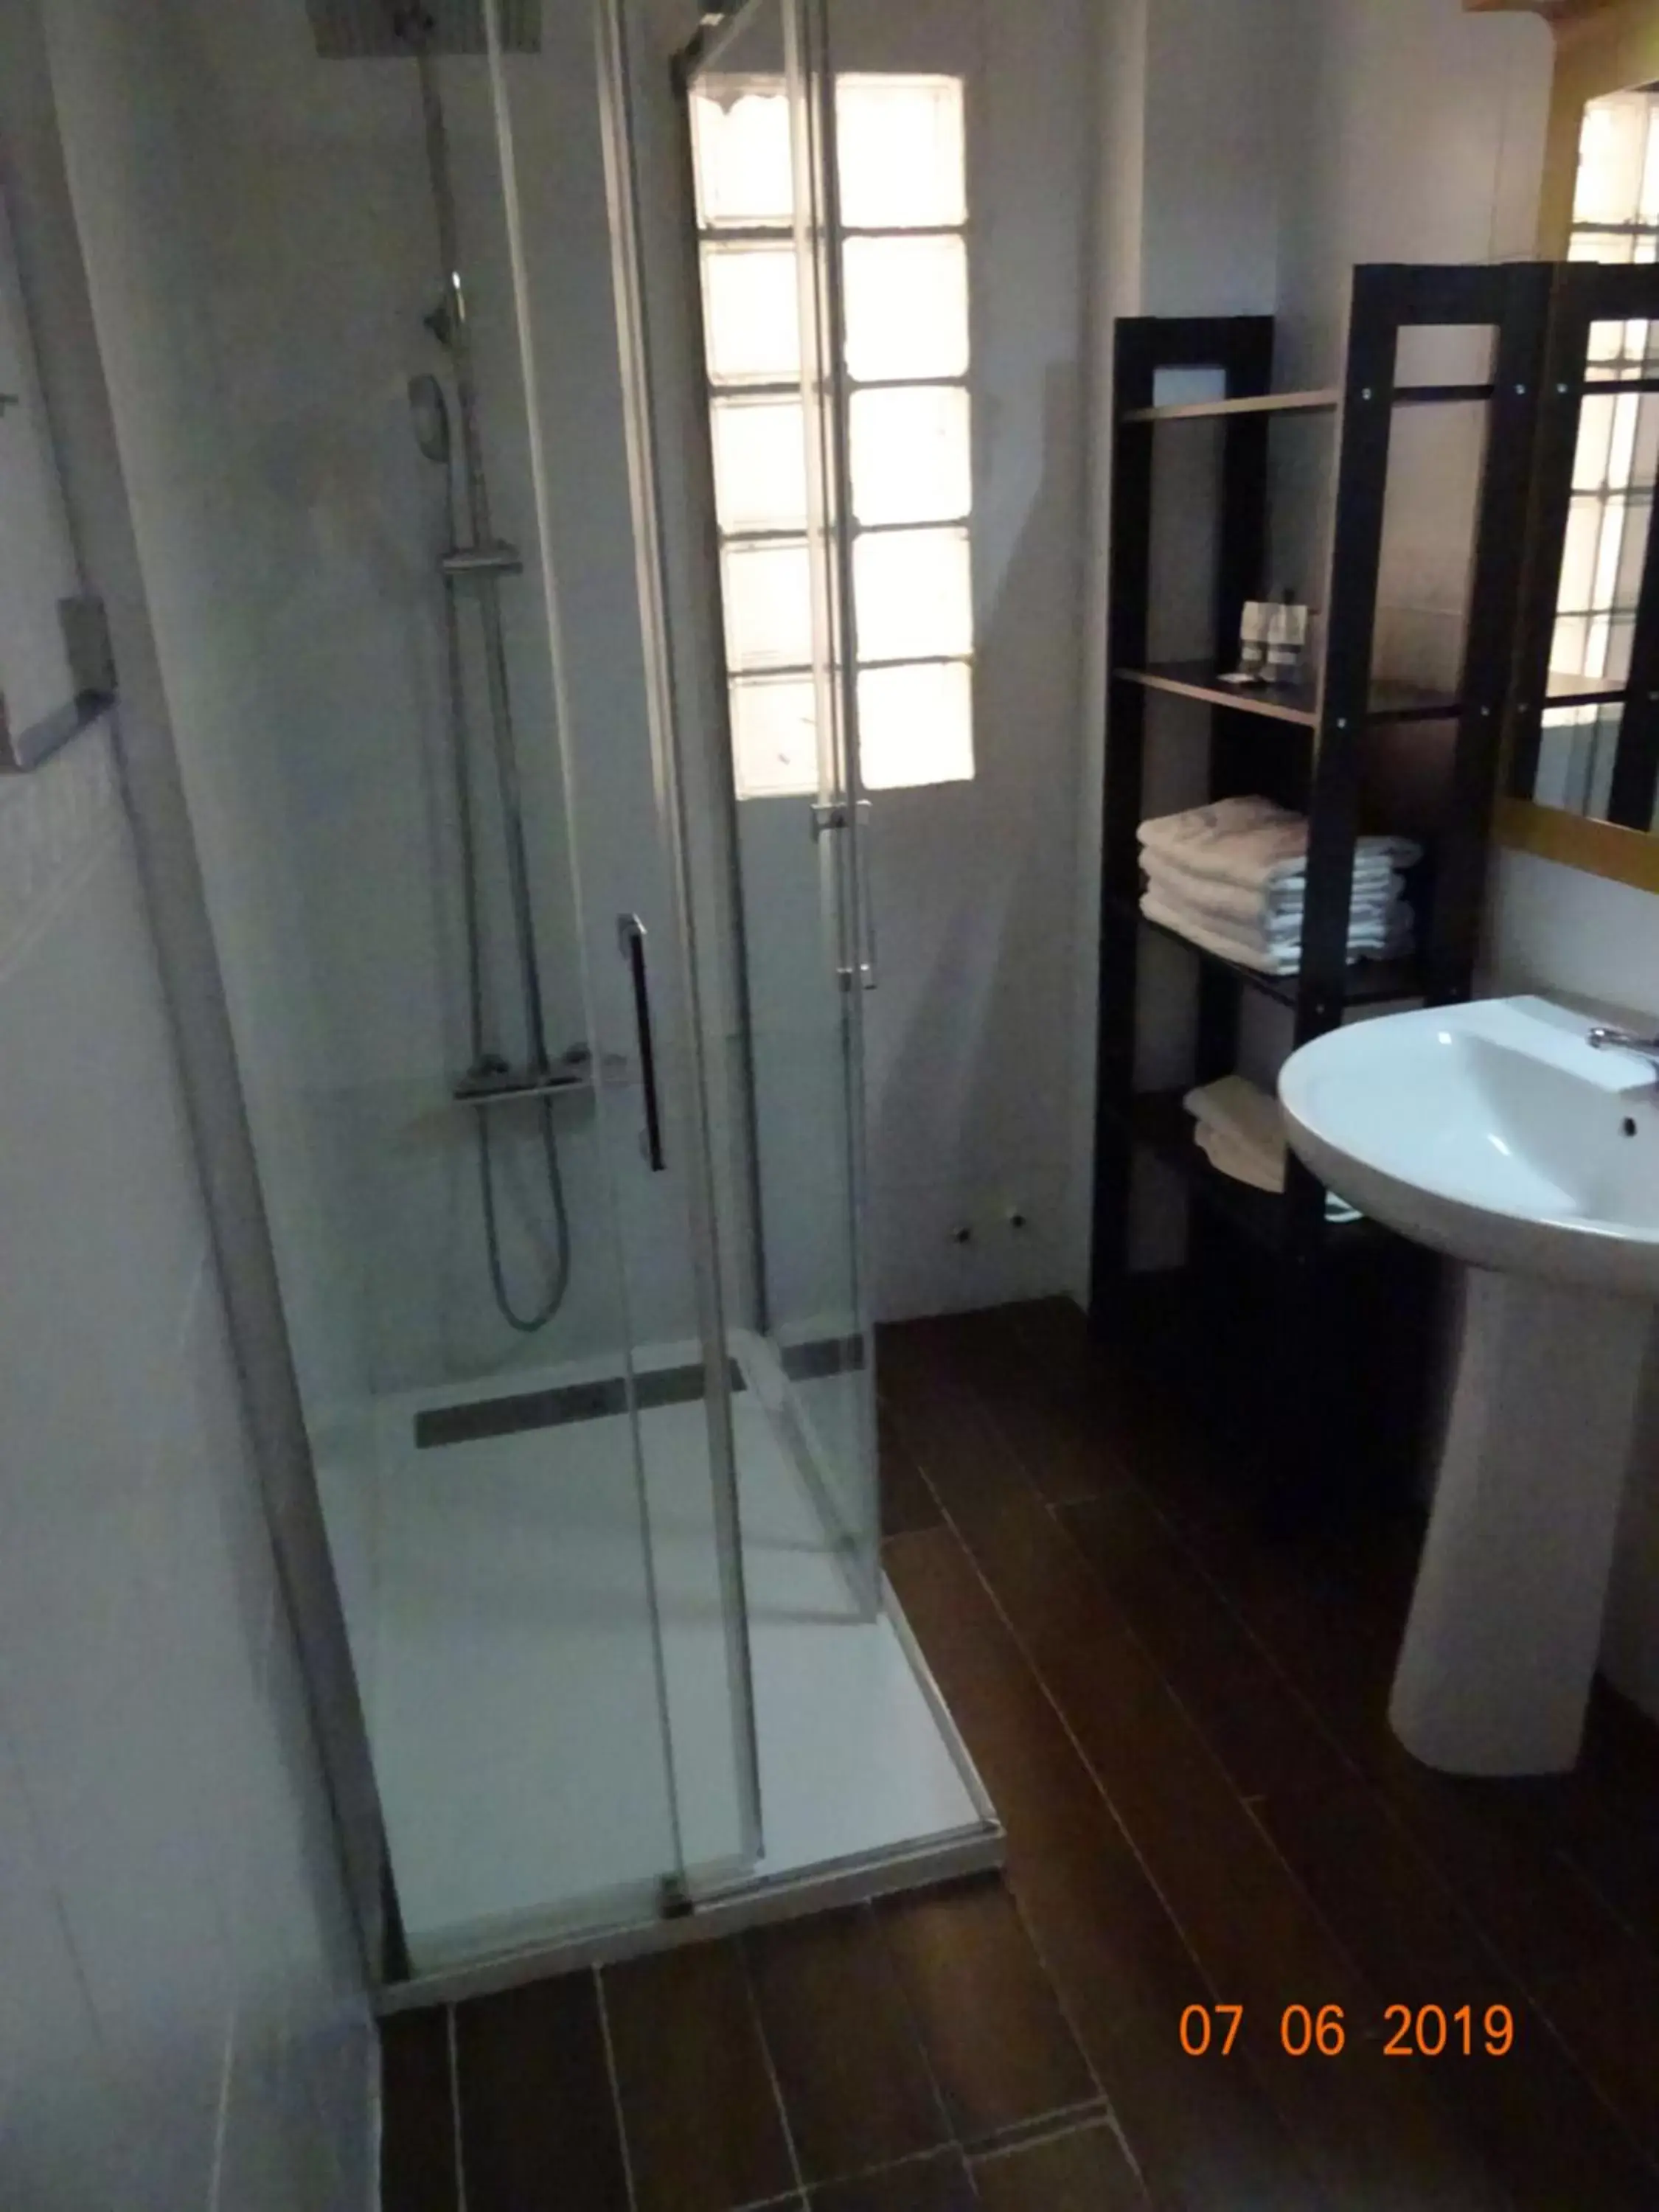 Bathroom in Hotel Carlos III